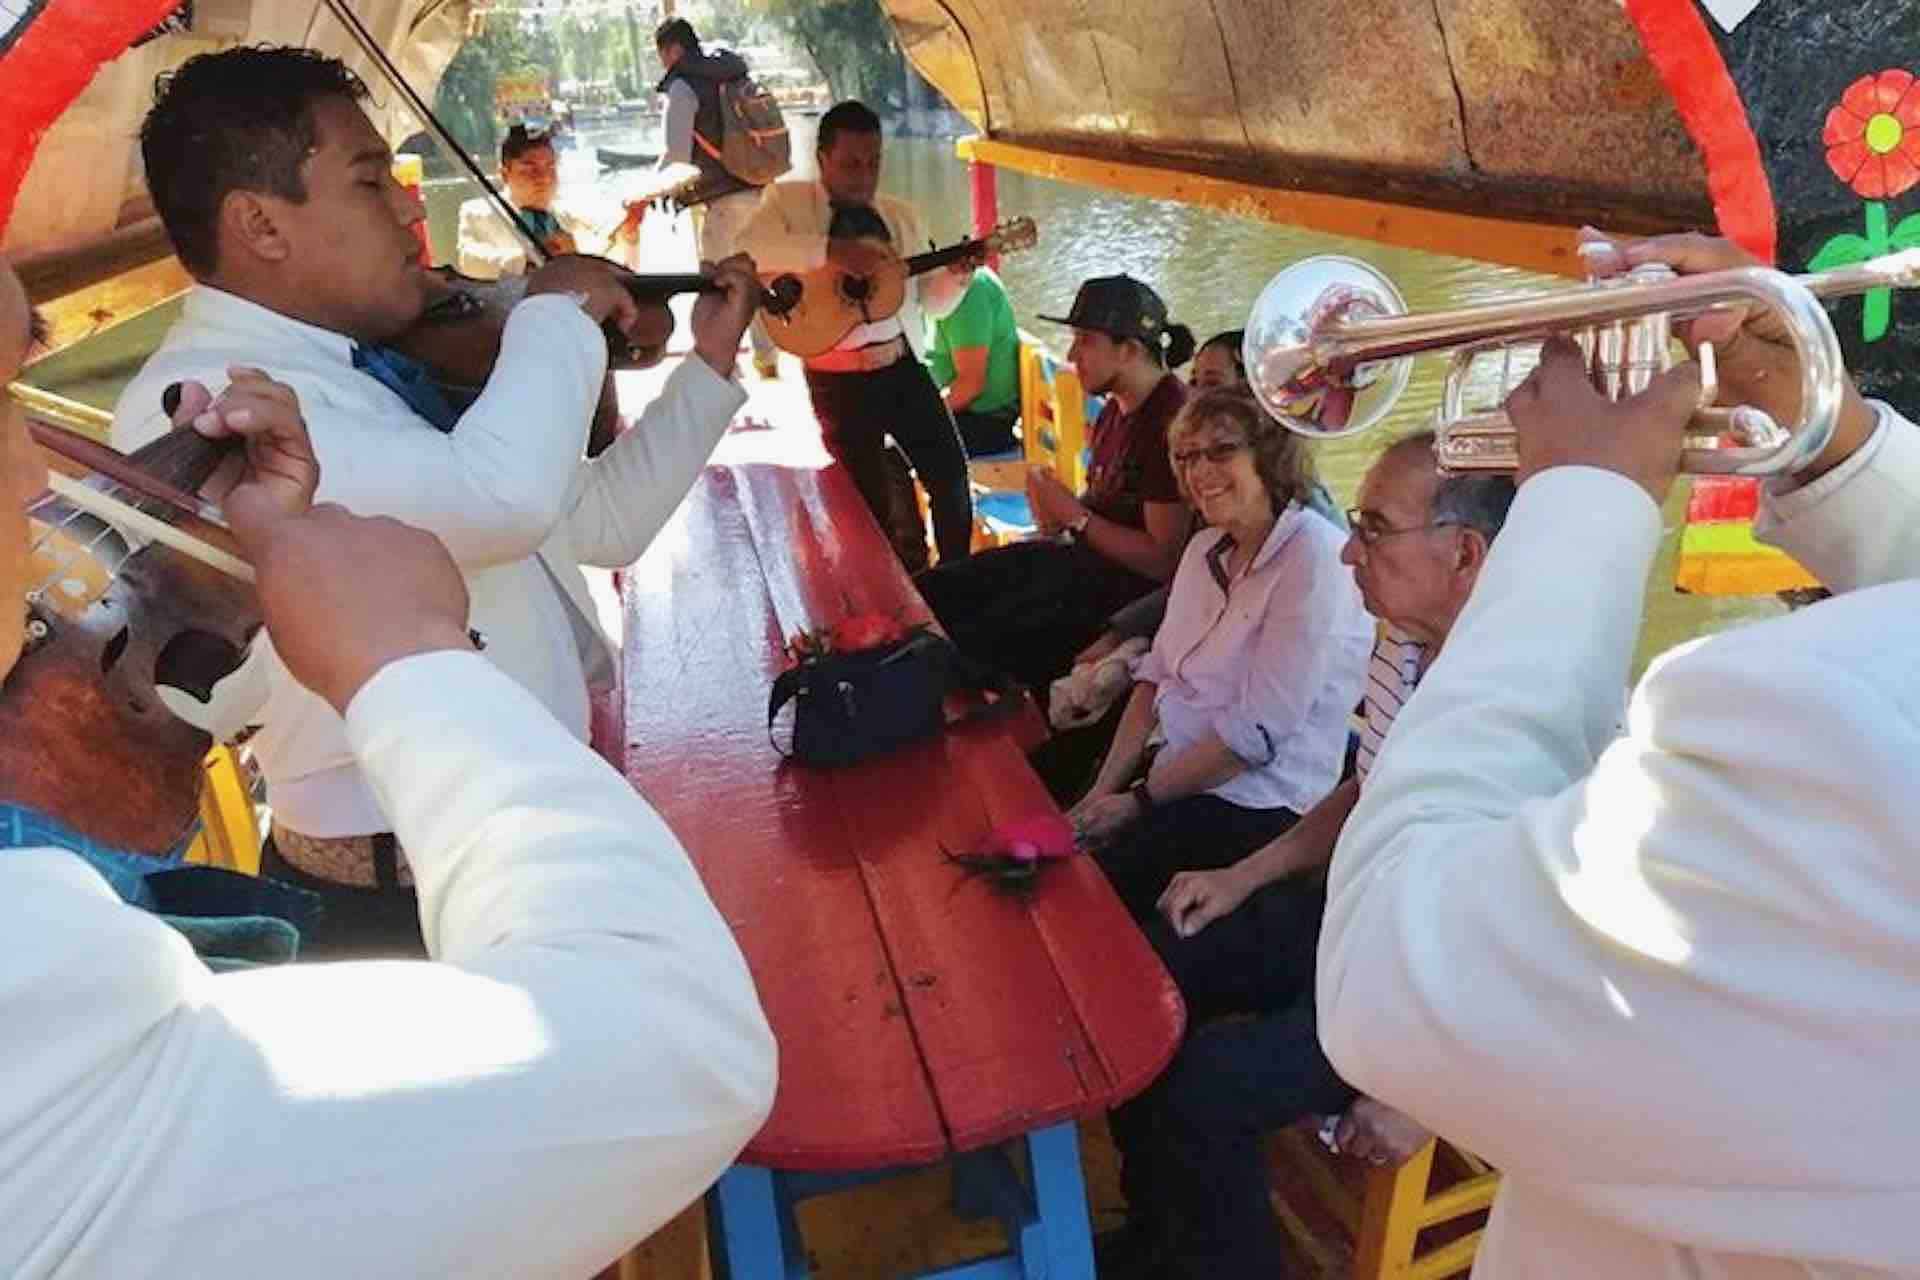 Xochimilco Mexico visitors on boat 1